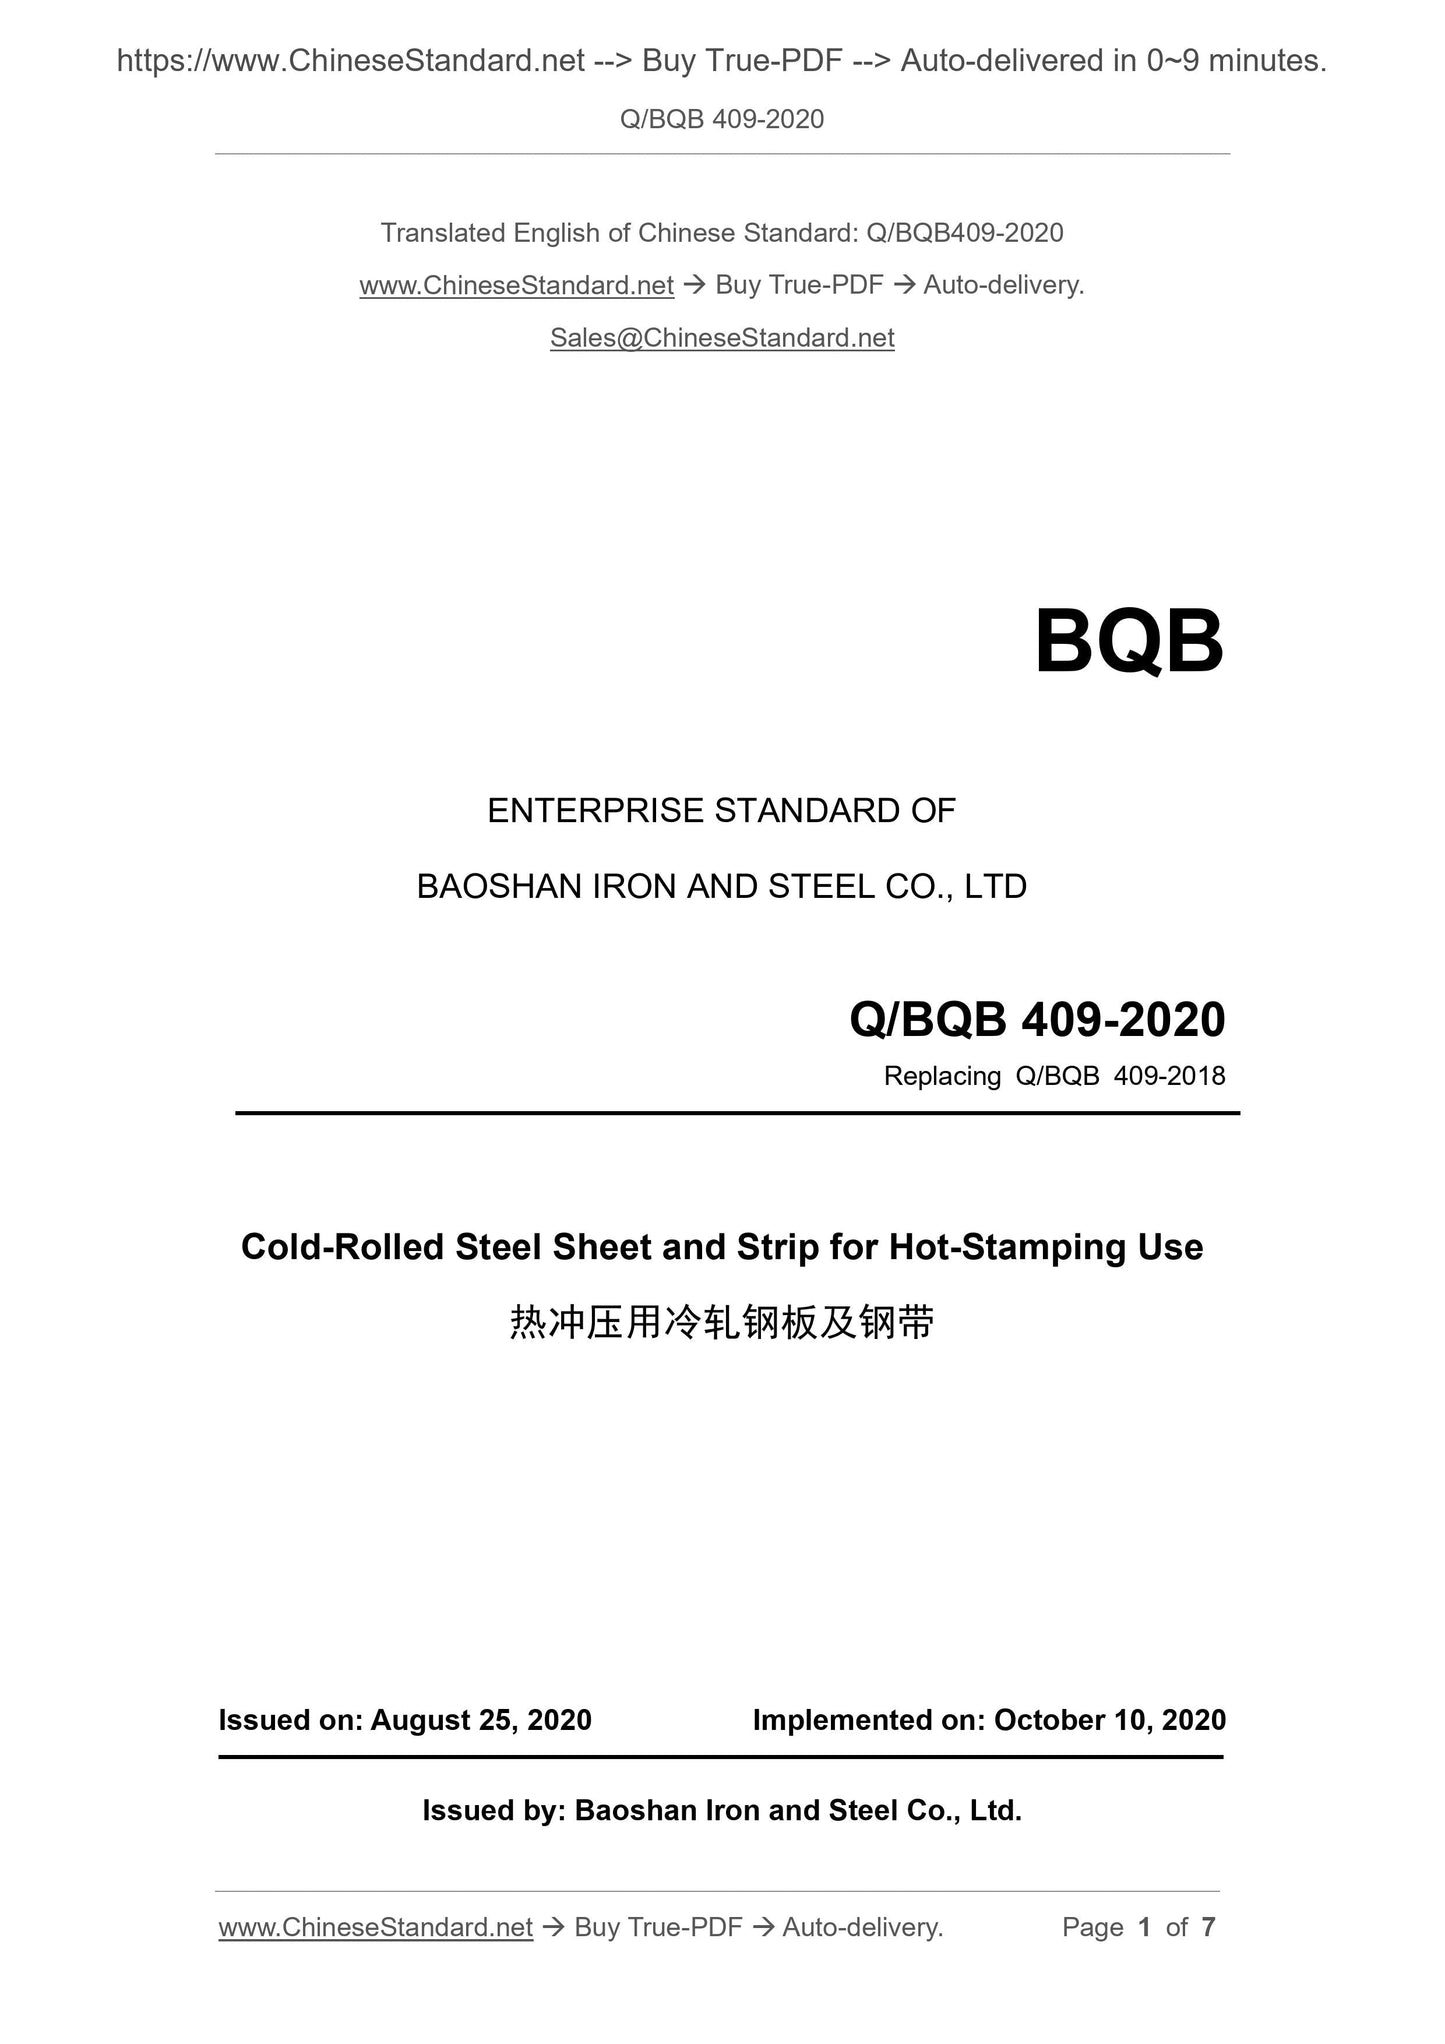 Q/BQB 409-2020 Page 1